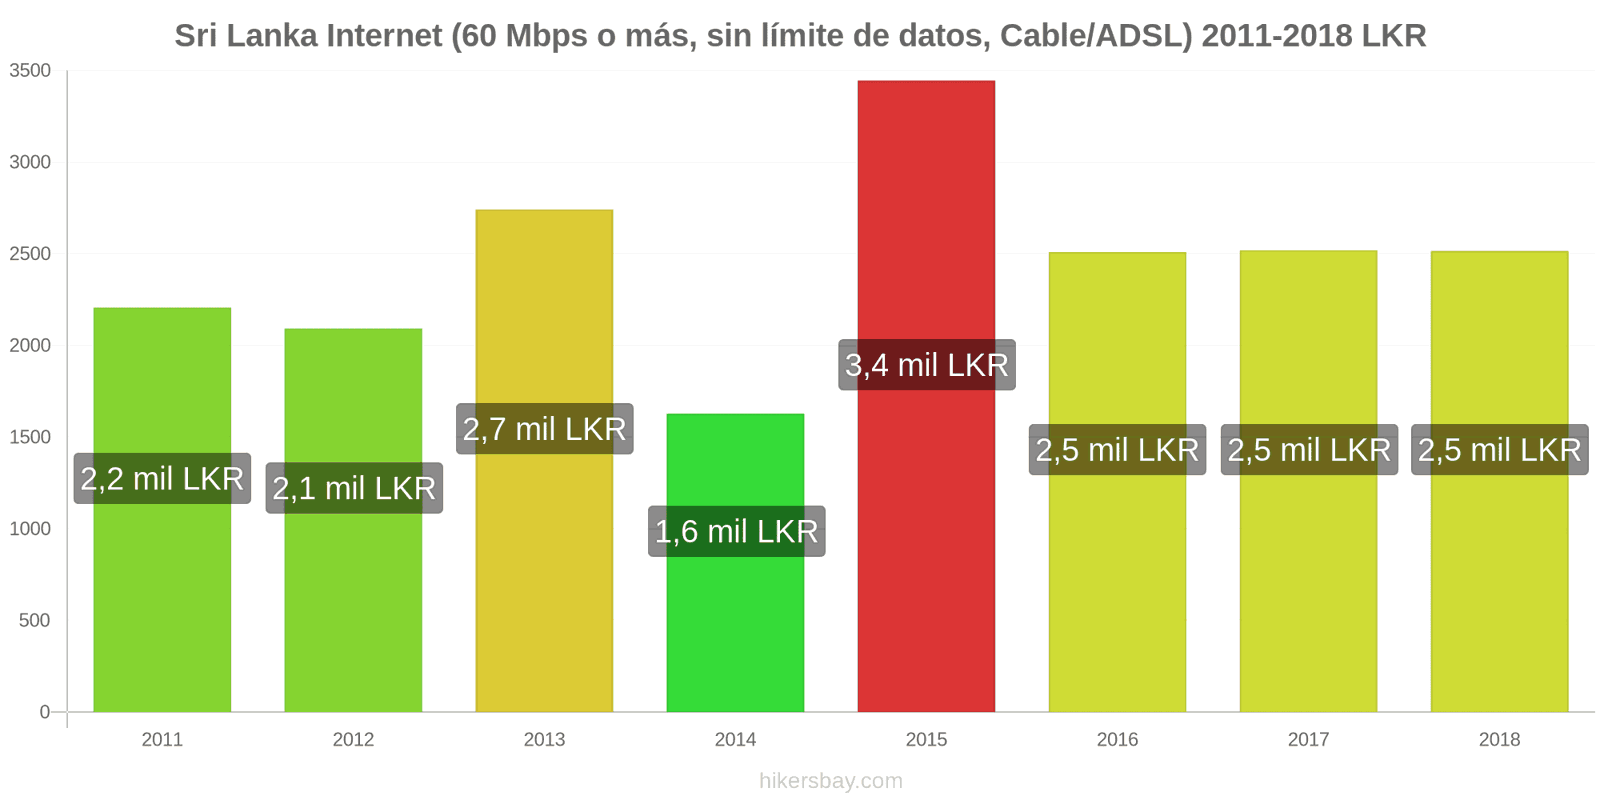 Sri Lanka cambios de precios Internet (60 Mbps o más, datos ilimitados, cable/ADSL) hikersbay.com